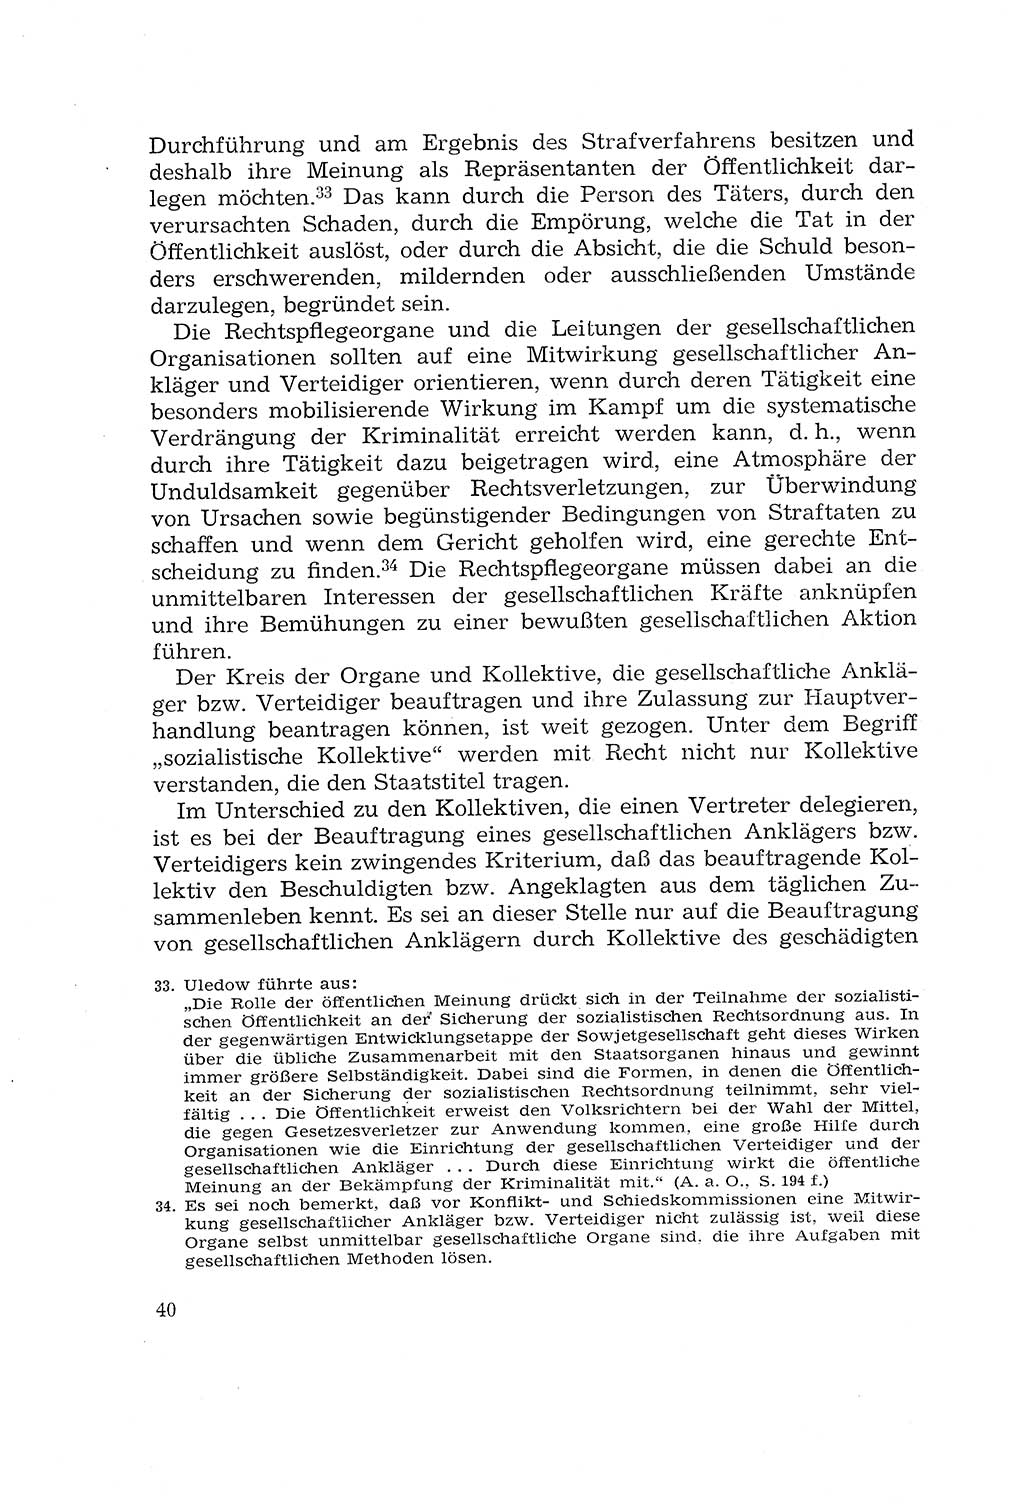 Die Mitwirkung der Werktätigen am Strafverfahren [Deutsche Demokratische Republik (DDR)] 1966, Seite 40 (Mitw. Str.-Verf. DDR 1966, S. 40)